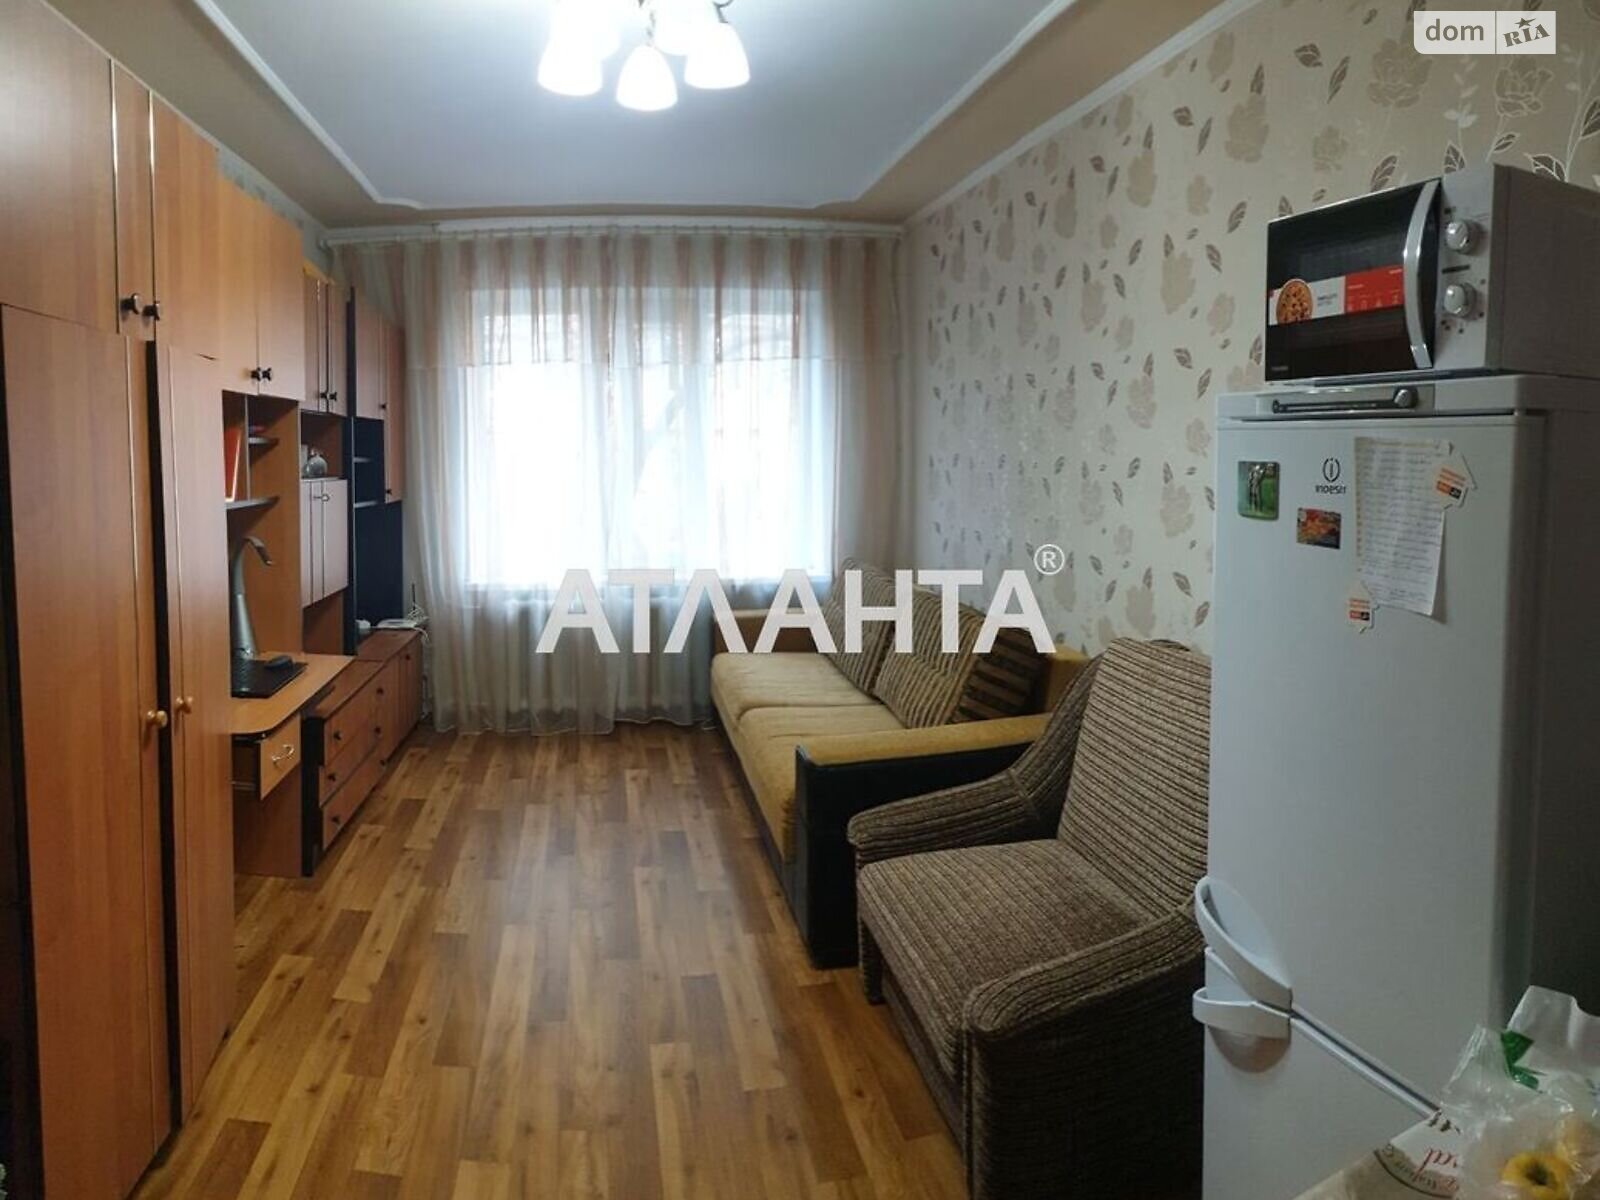 Кімната в Одесі на вул. Транспортна в районі Приморський на продаж фото 1